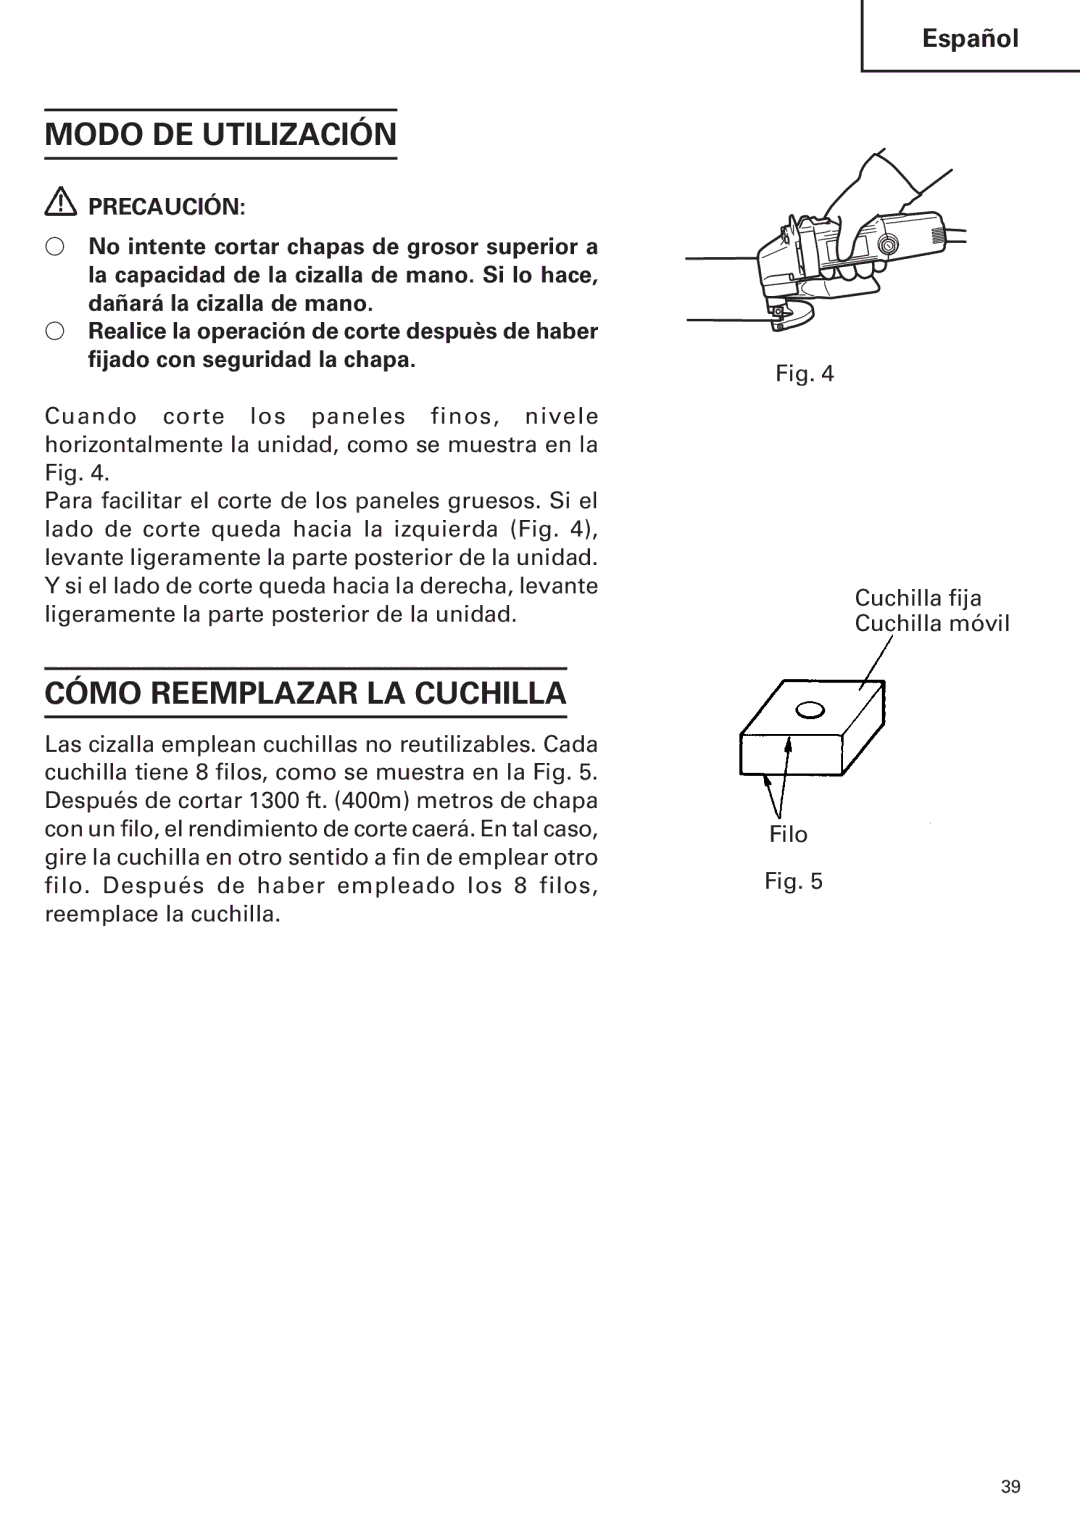 Hitachi CE 16SA instruction manual Modo DE Utilización, Cómo Reemplazar LA Cuchilla 